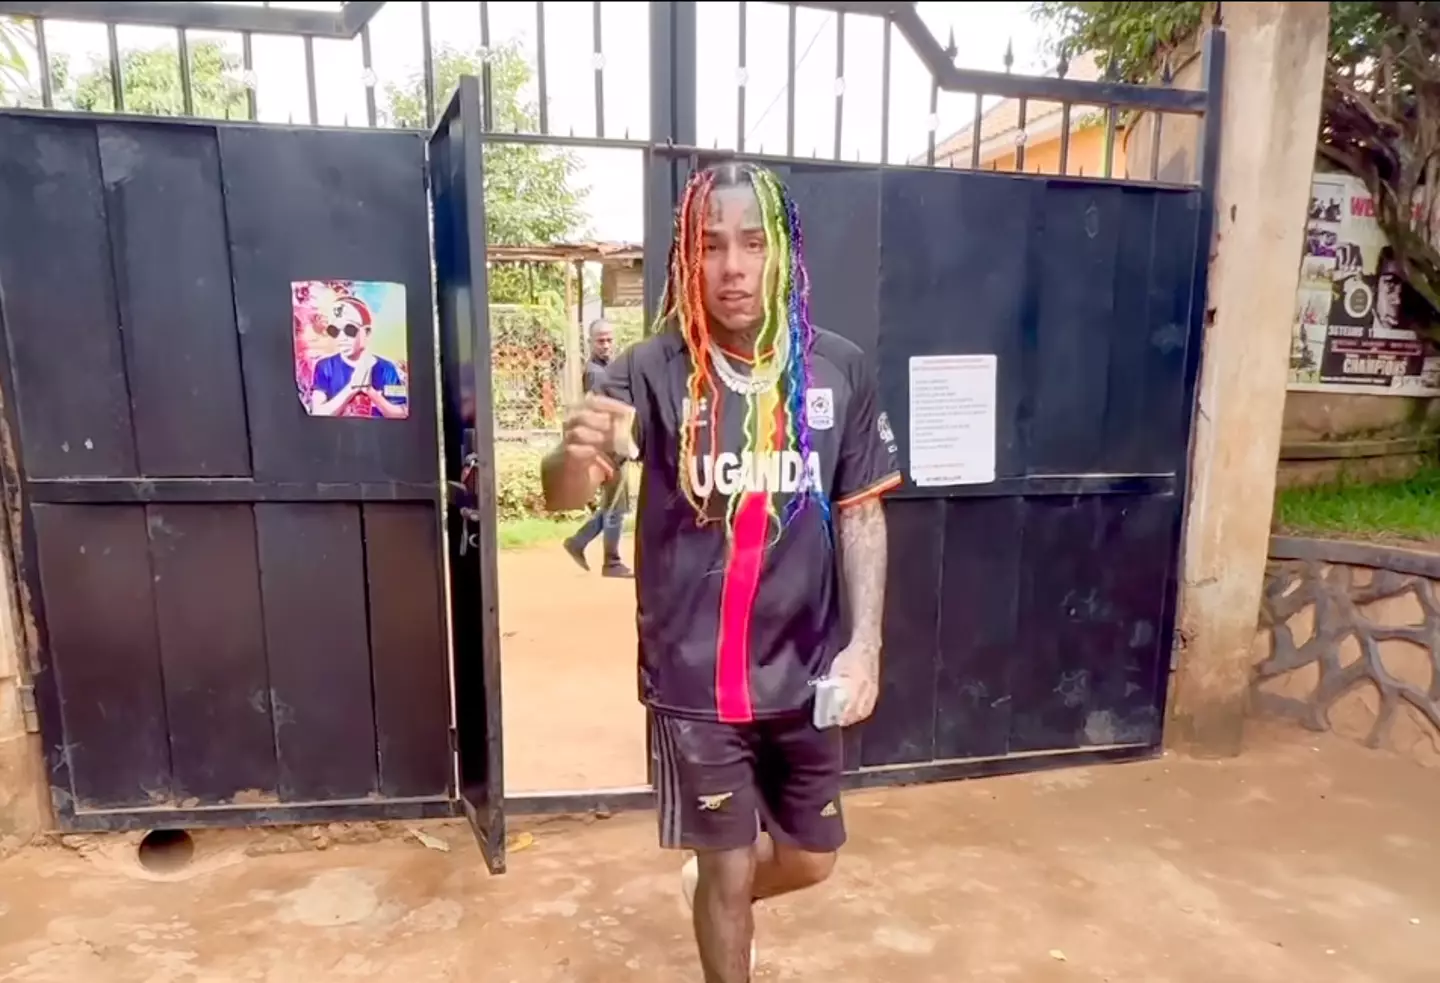 Tekashi travelled to Uganda to film his video.